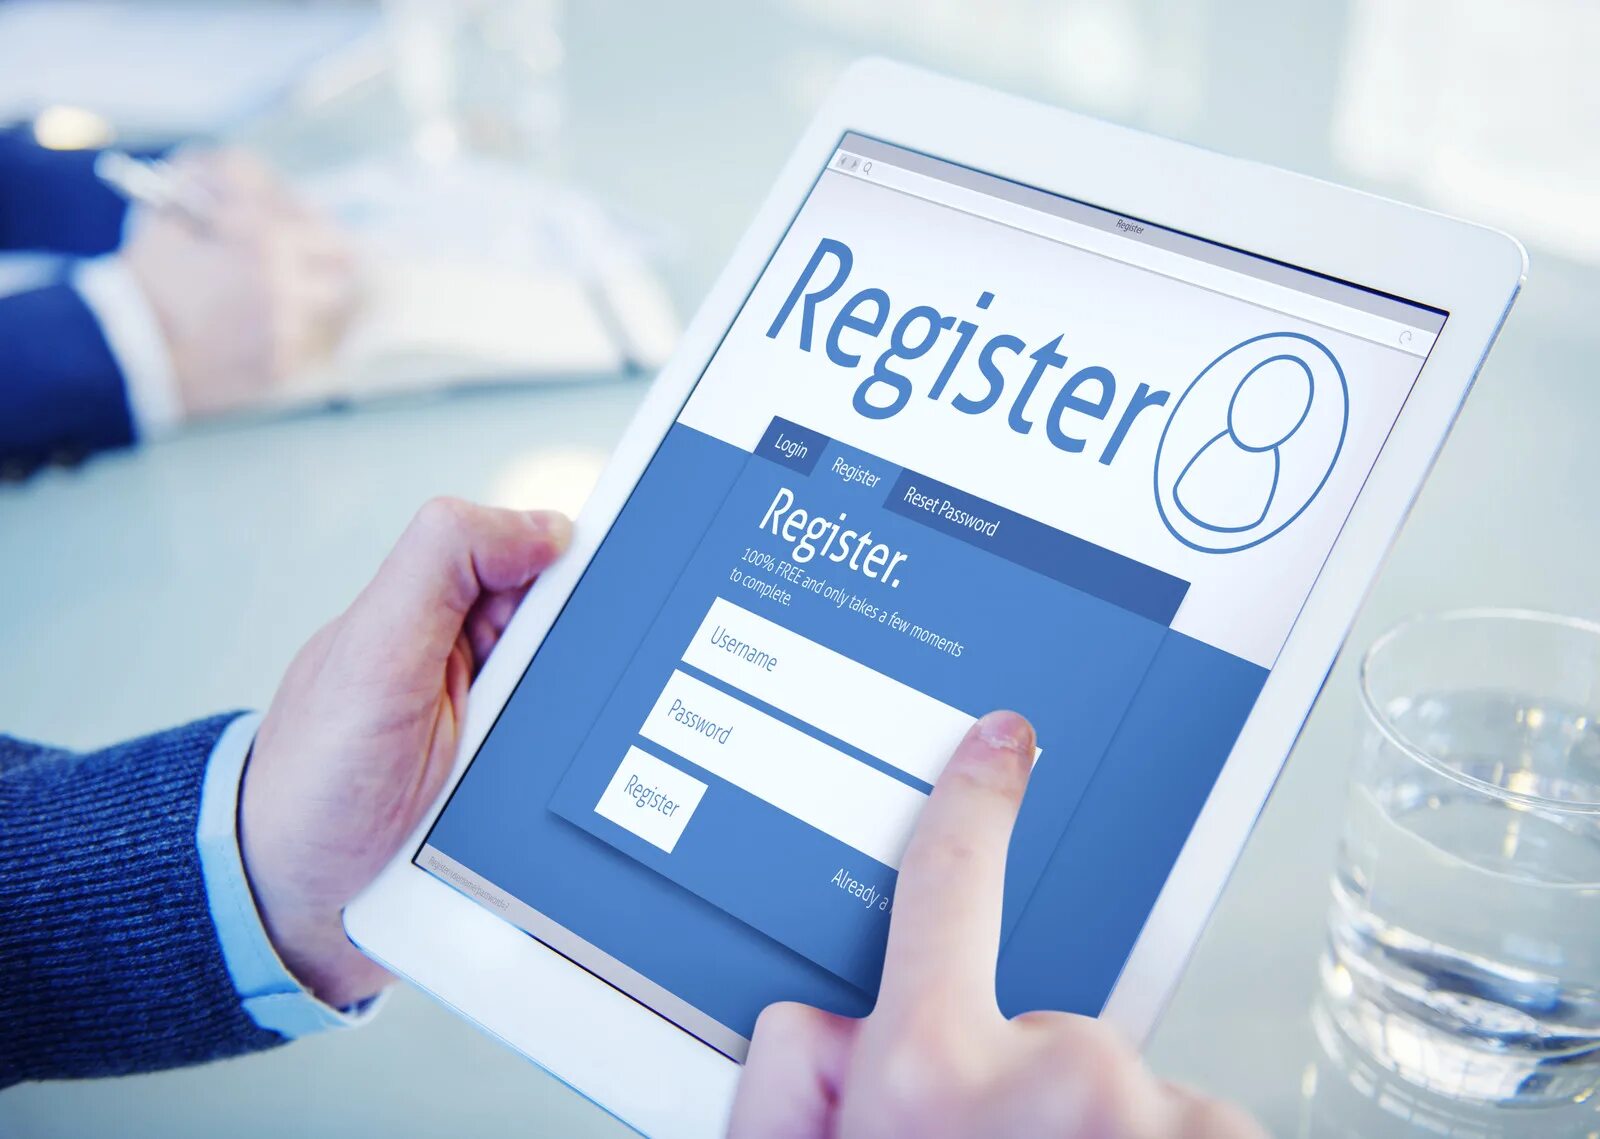 Регистрация. Регистрация картинка. Регистрация иллюстрация. Картинка регистрация на сайте. Client registration